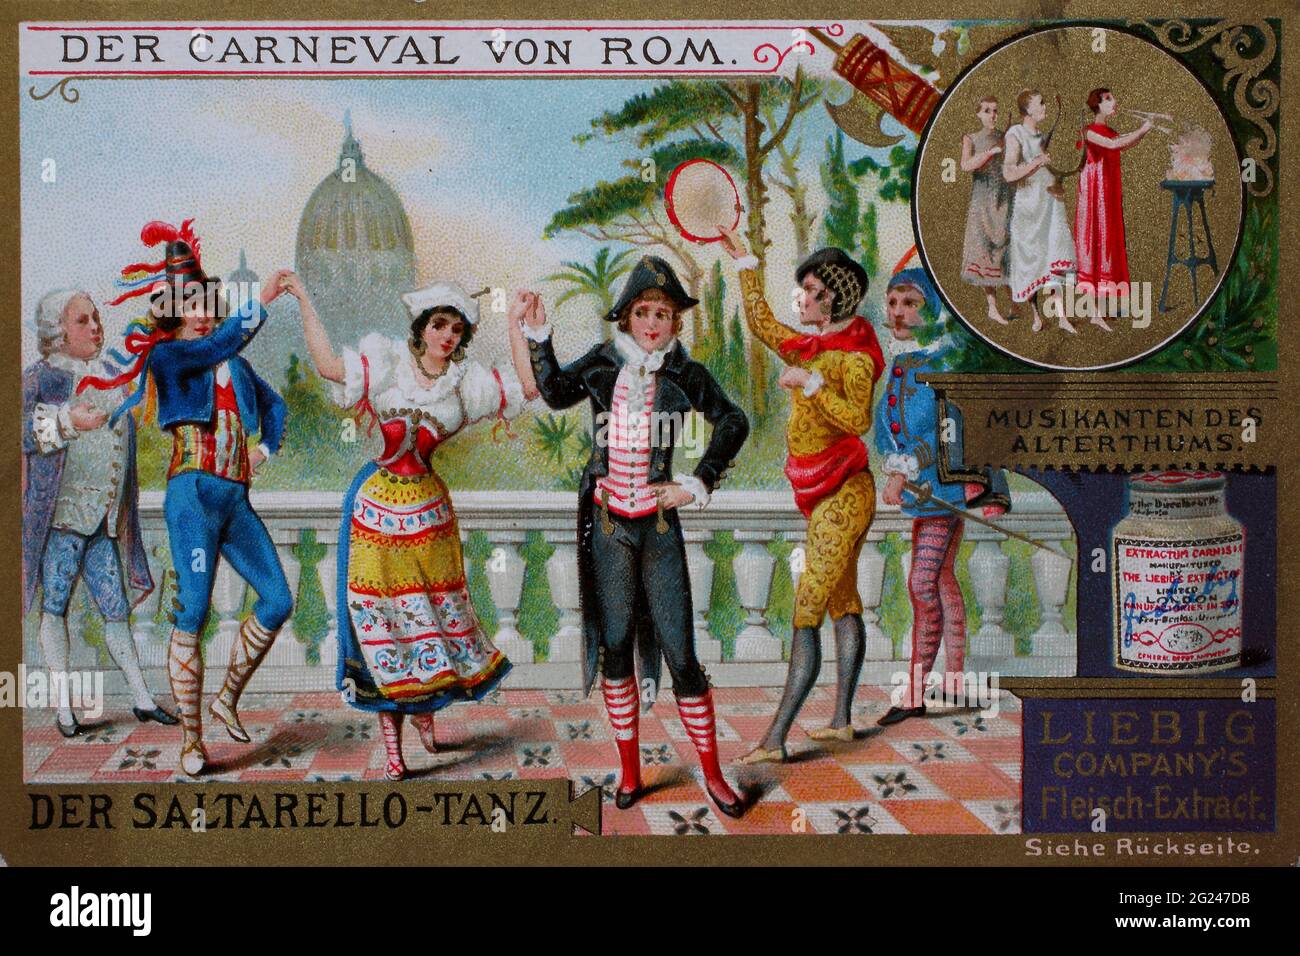 Sammelbild Serie der Karneval von Rom, der Saltarello Tanz / Sammelbild Serie der Karneval von Rom, der Saltarello Tanz, Liebigbild, digital verbesserte Reproduktion eines Sammelbildes der Firma Liebig, geschätzt von 1900, pd / digital verbesserte Reproduktion eines Sammelbildes von ca 1900, gemeinfrei, Stockfoto